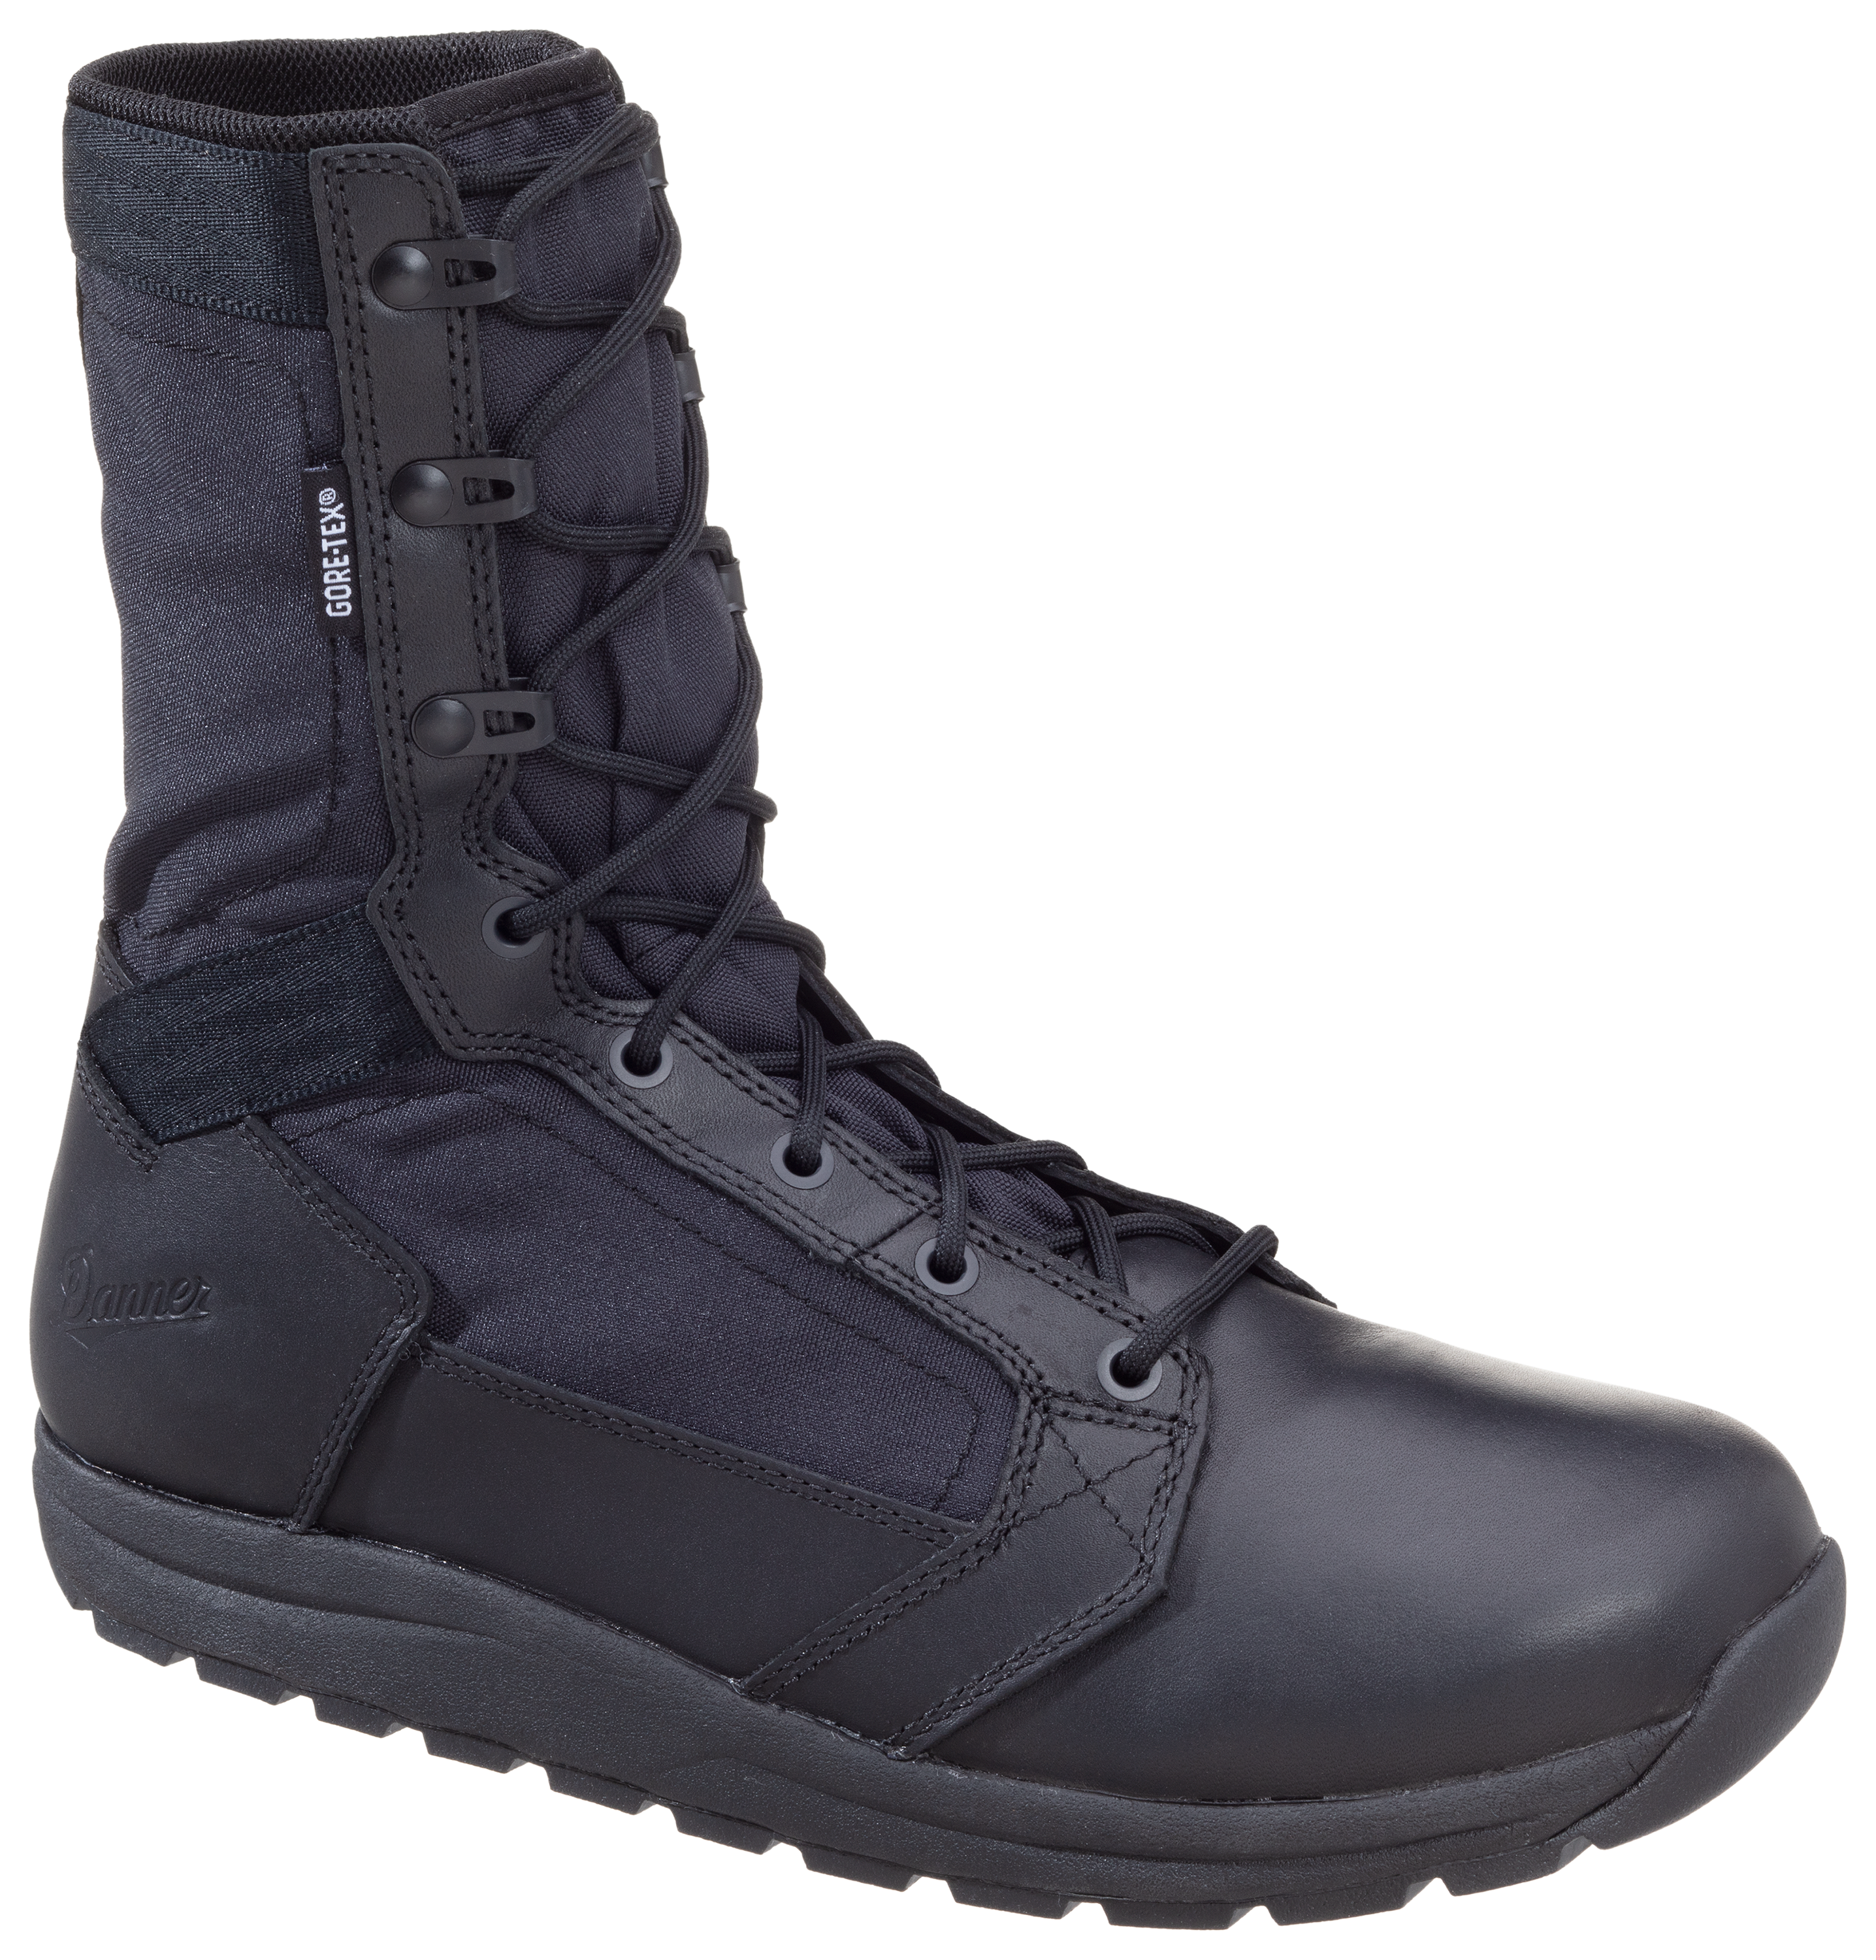 Danner Tachyon GORE-TEX Tactical Duty Boots for Men - Black - 11M